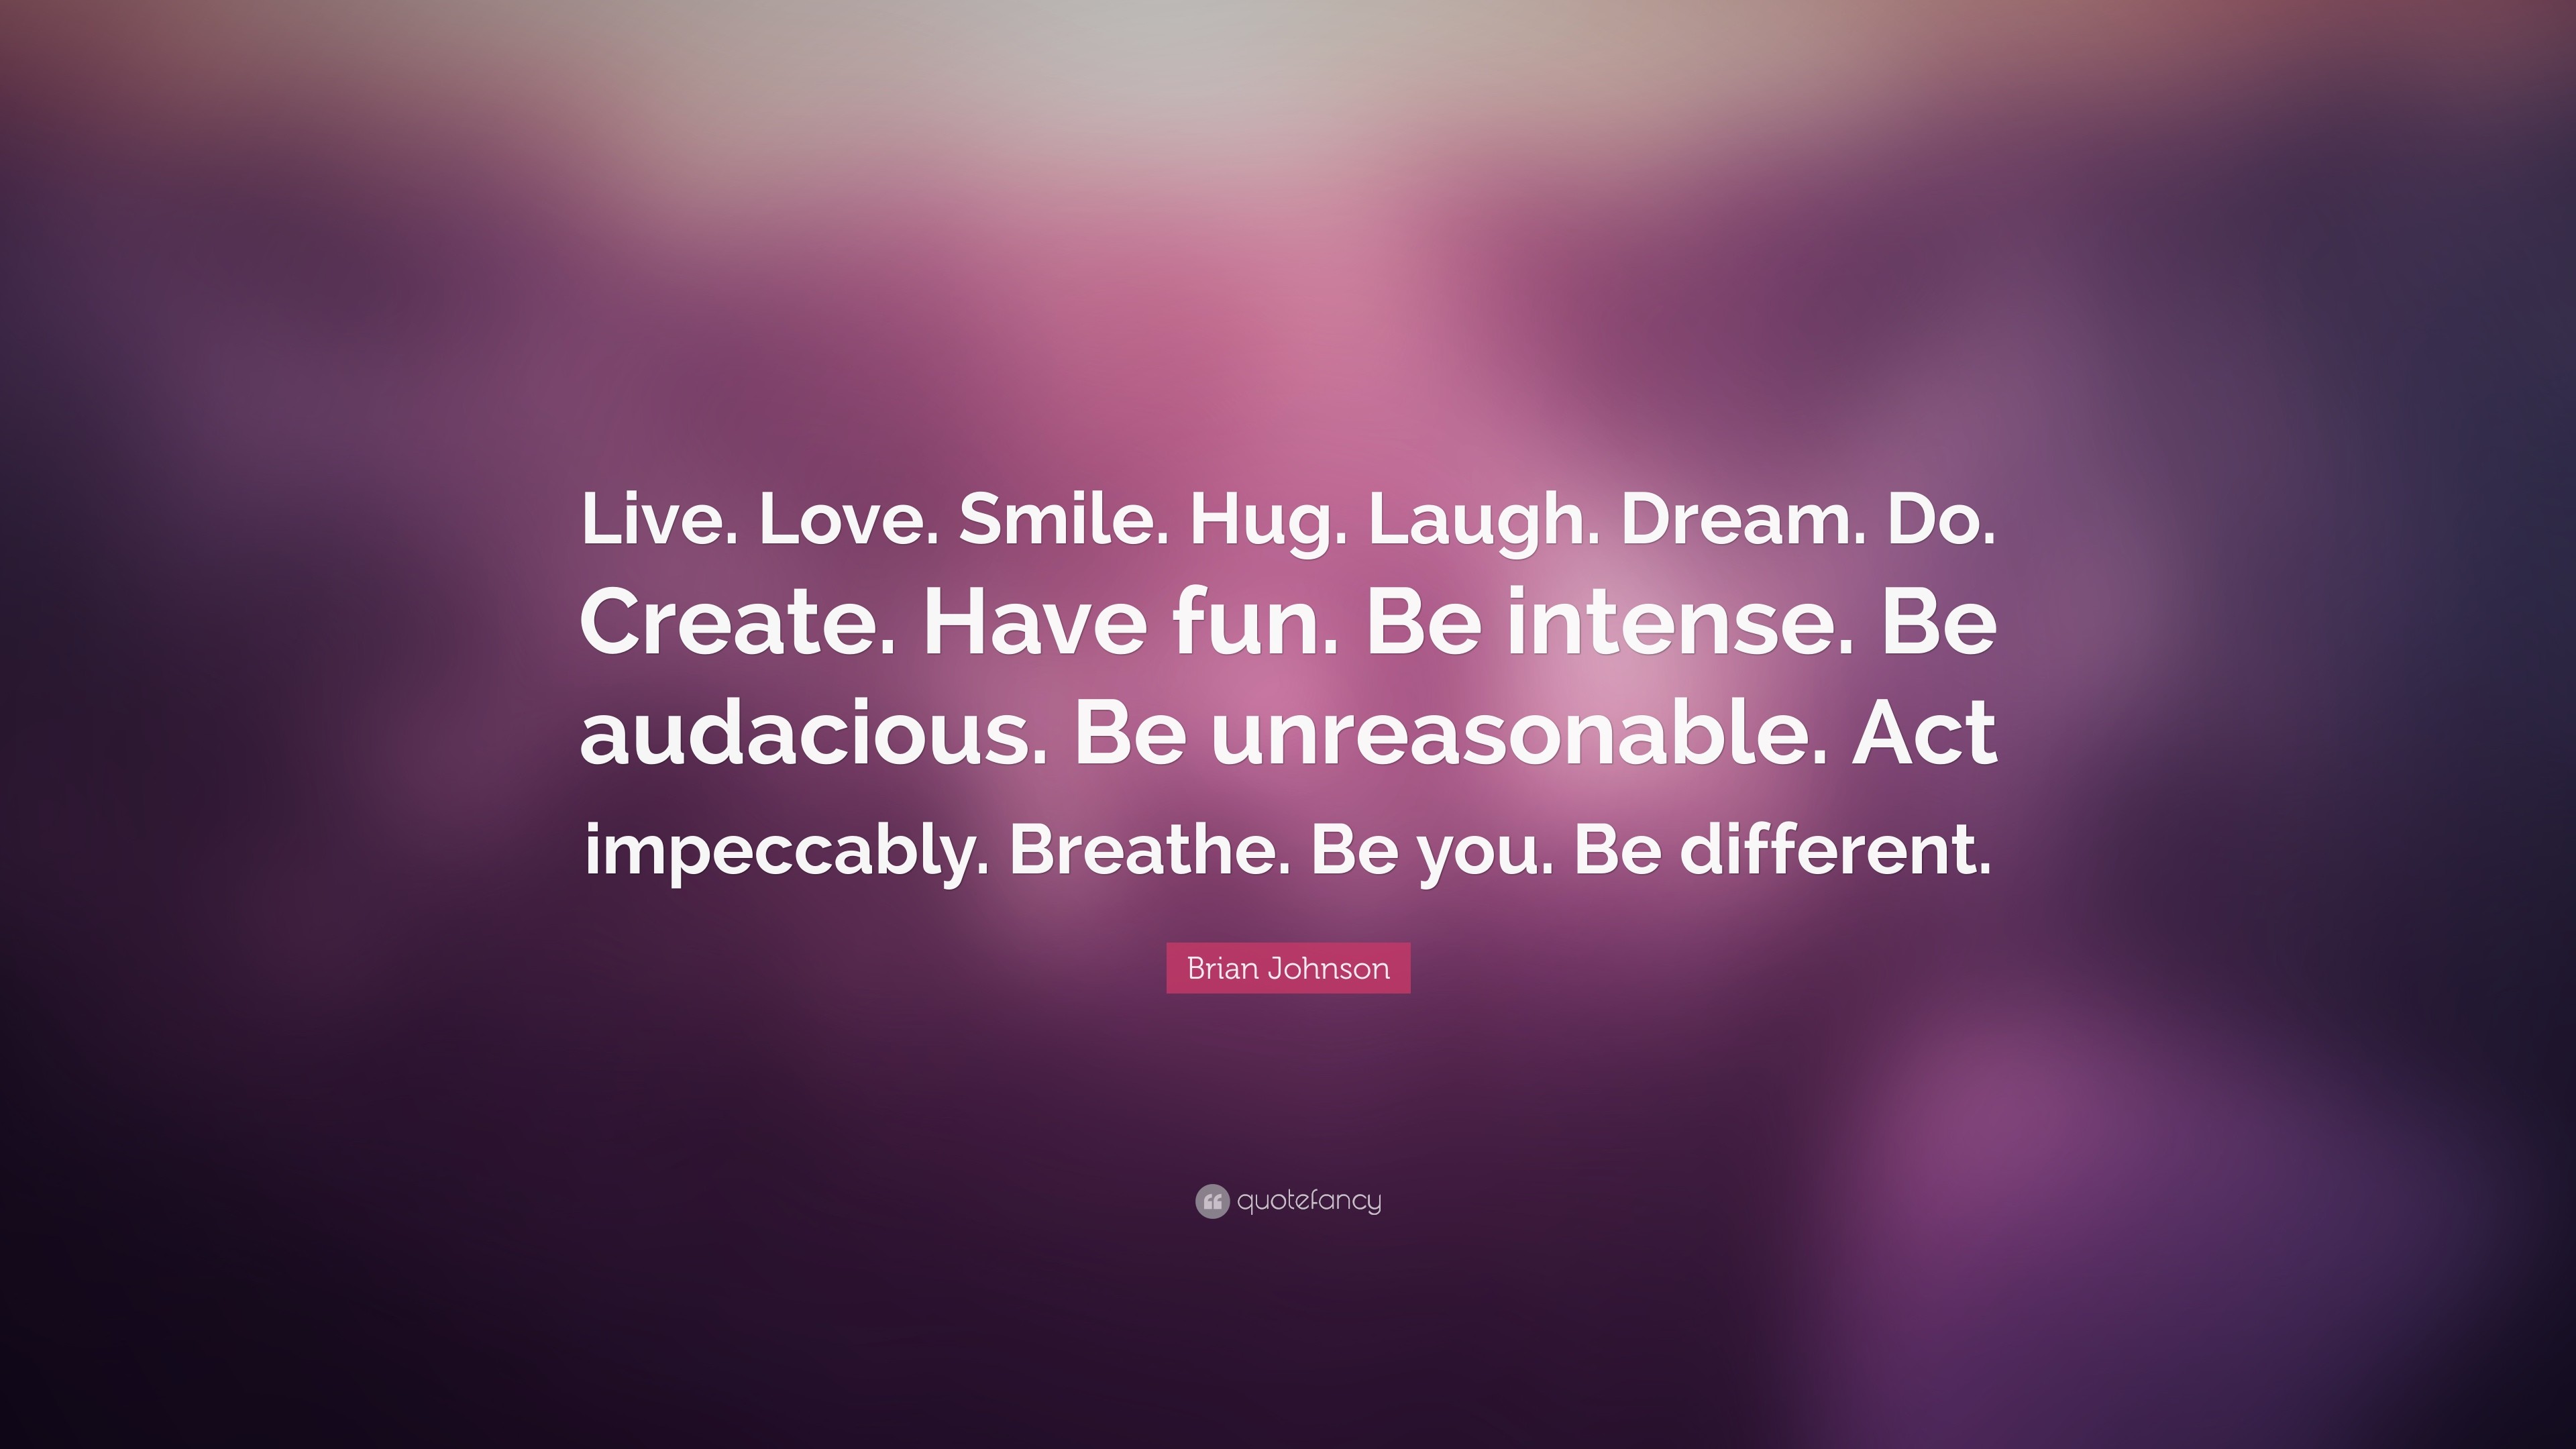 3840x2160 Brian Johnson Quote: “Live. Love. Smile. Hug. Laugh. Dream